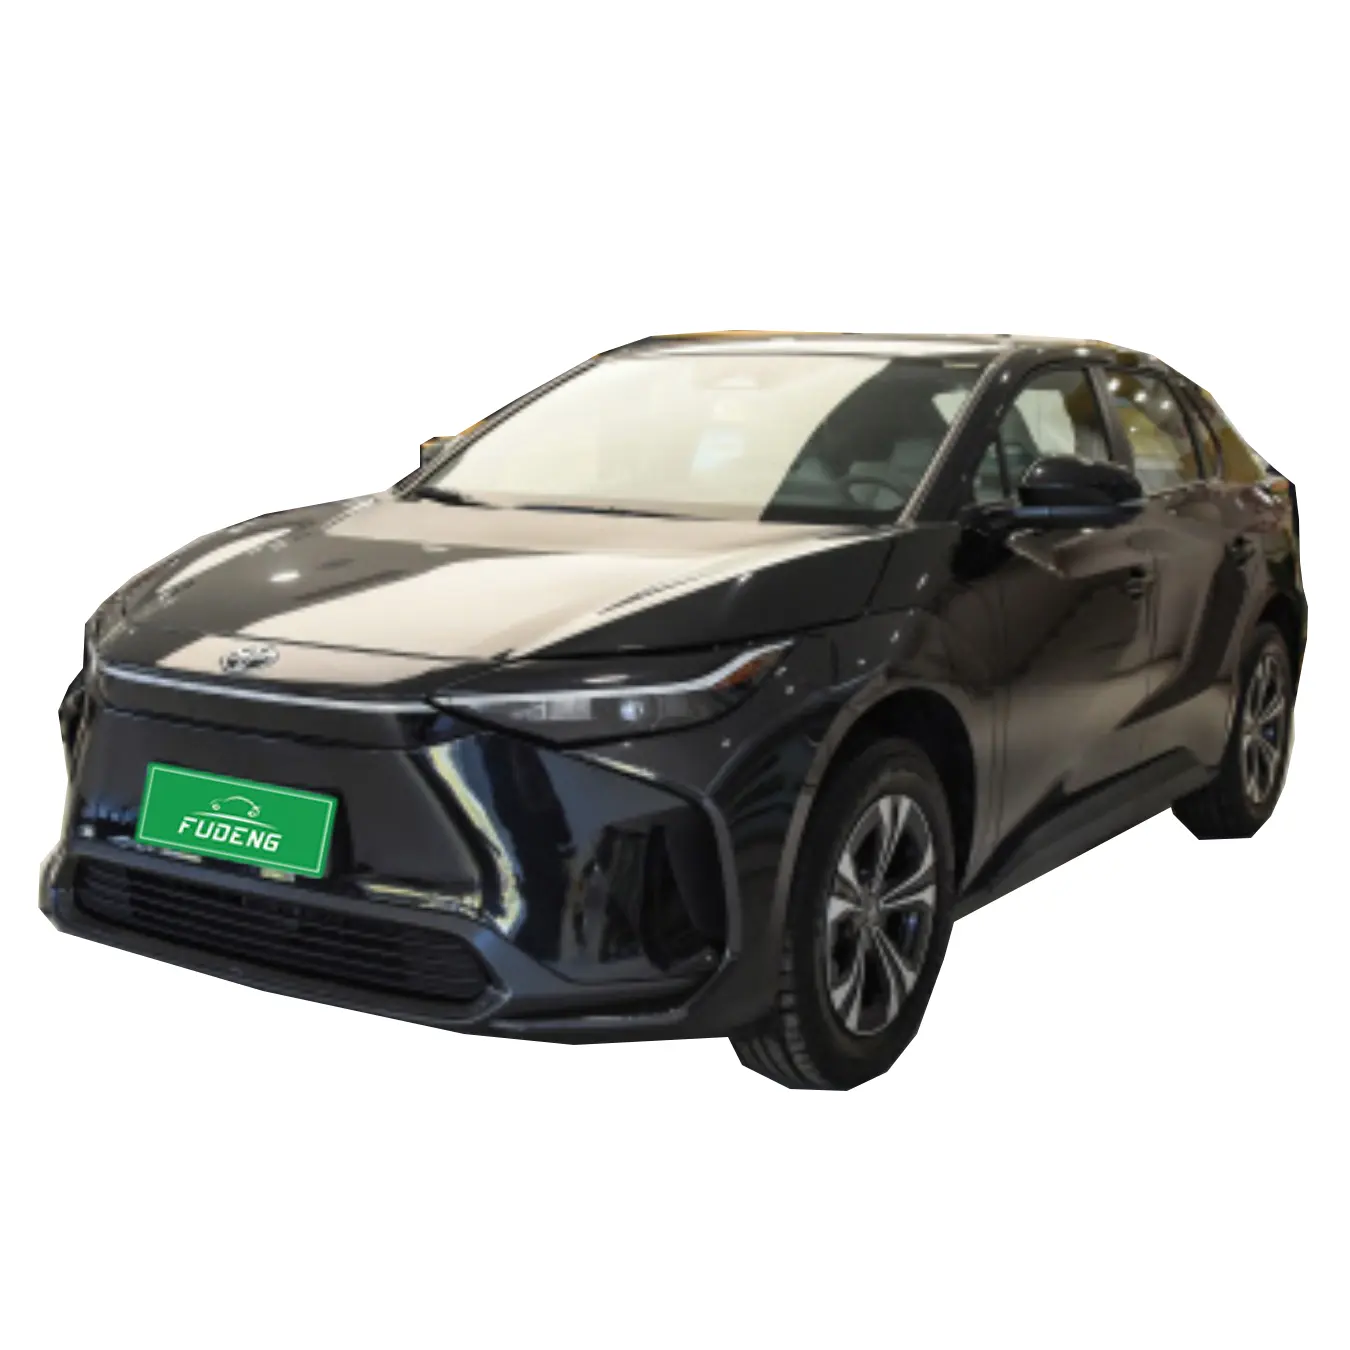 Gac to-yota bz4x điện xe lớn Cỡ trung SUV tốt nhất xe hơi sang trọng giá 2022 mua xe bán